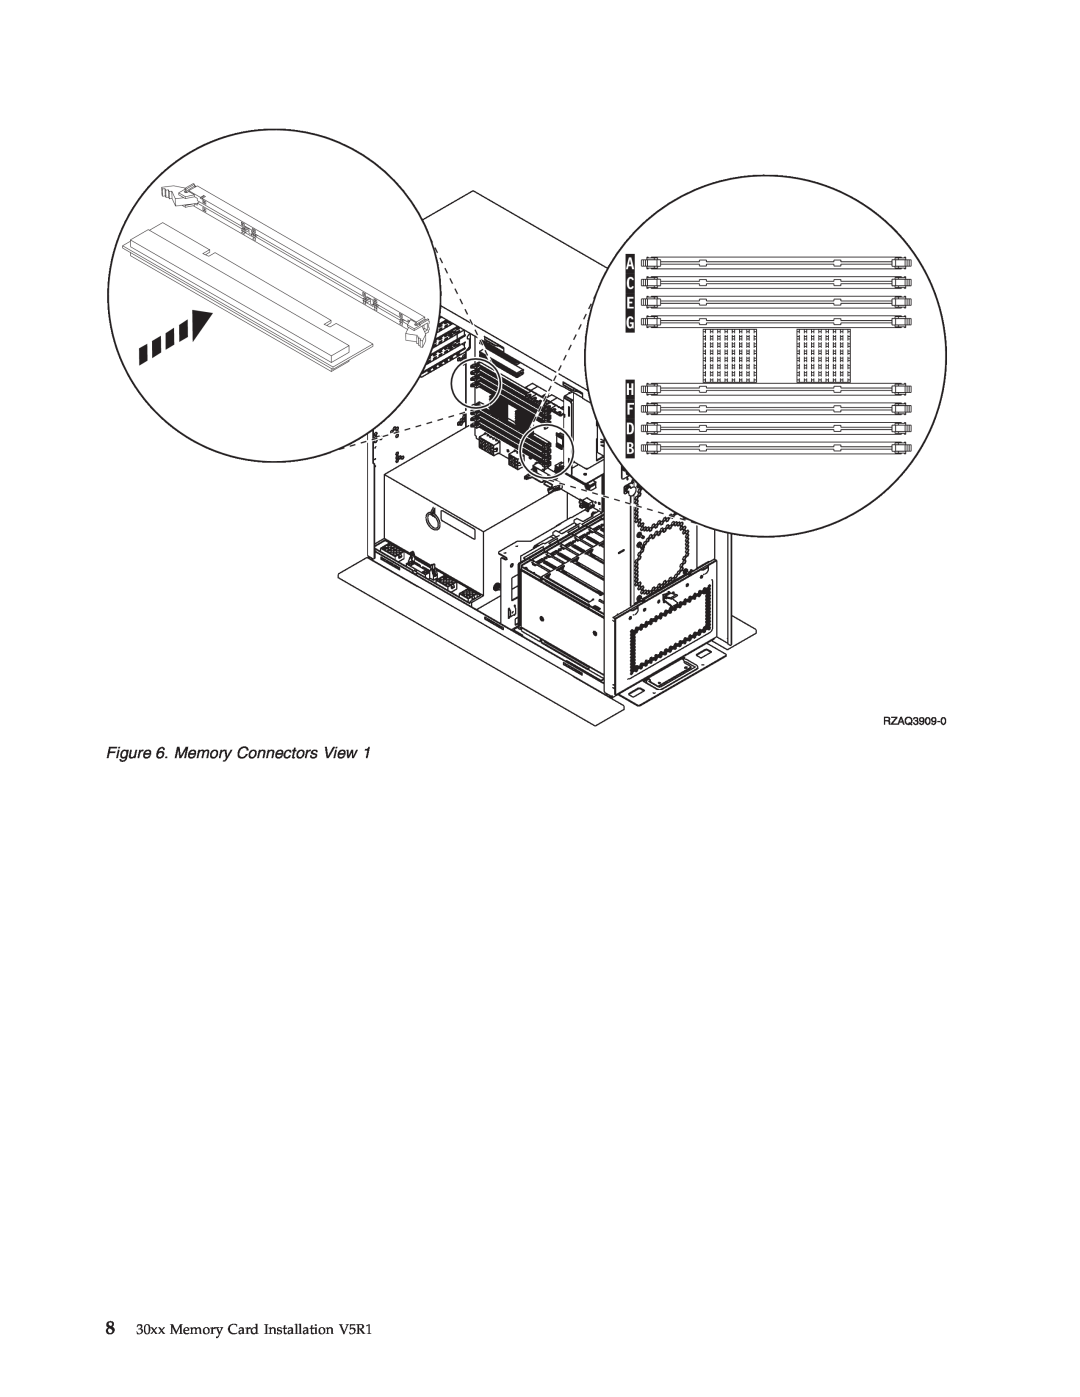 IBM SENG-3002-01 manual Memory Connectors View, 8 30xx Memory Card Installation V5R1 